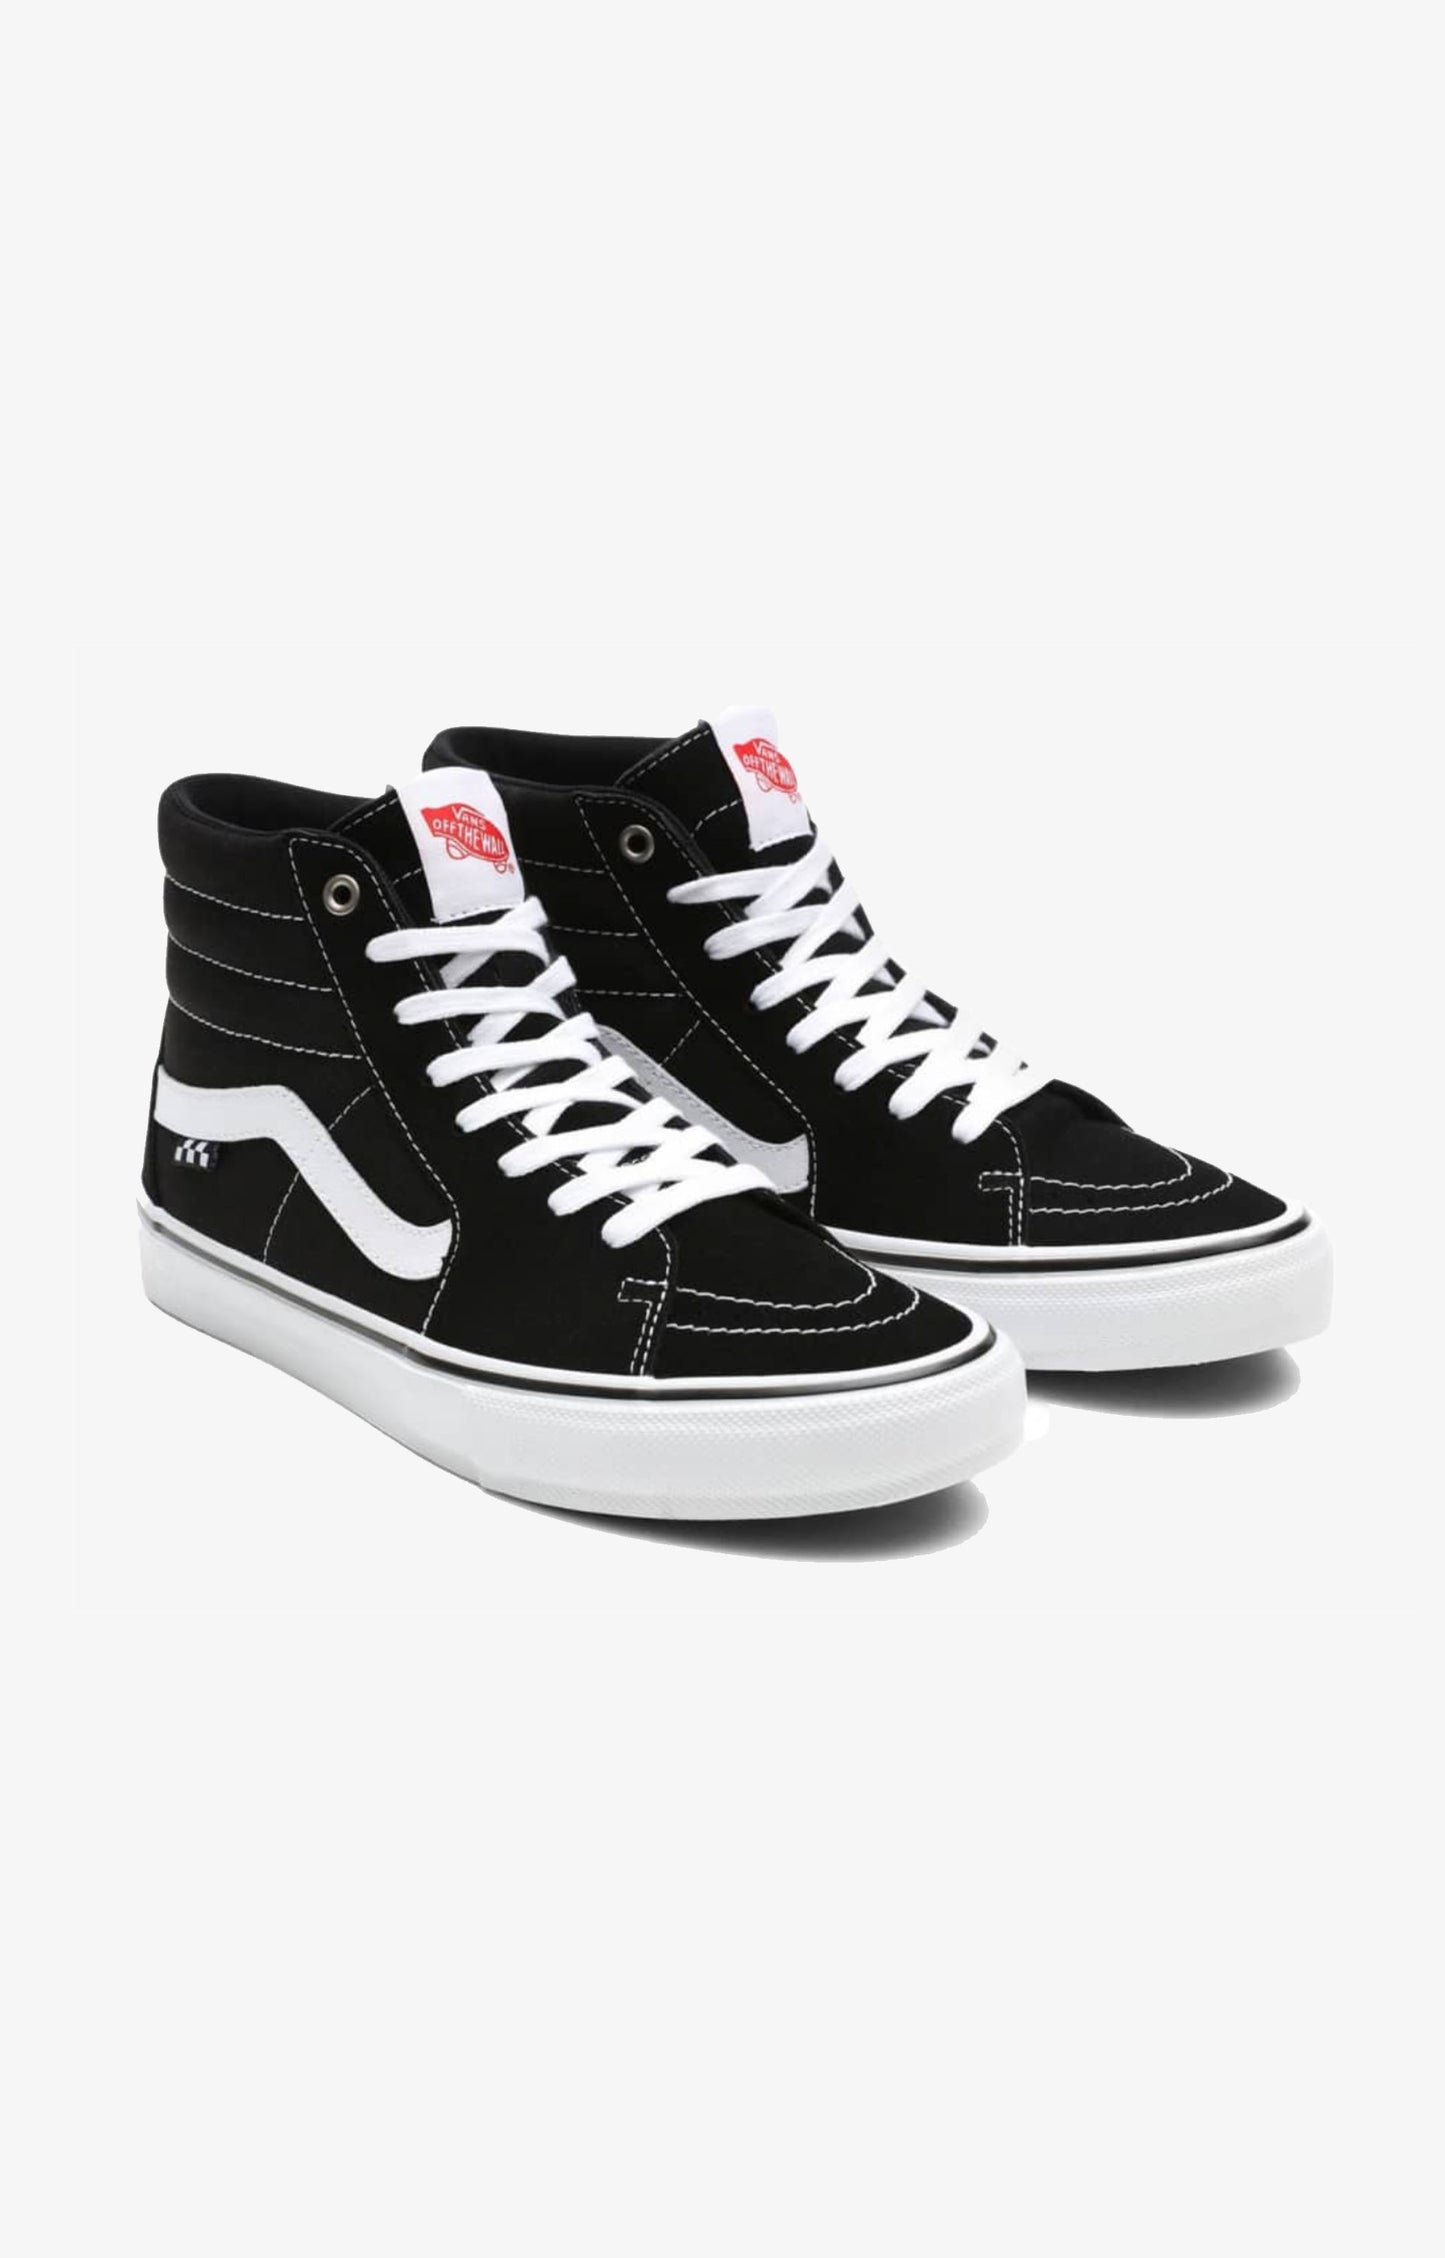 Vans Skate Sk8-Hi Pro Shoes, Black/White